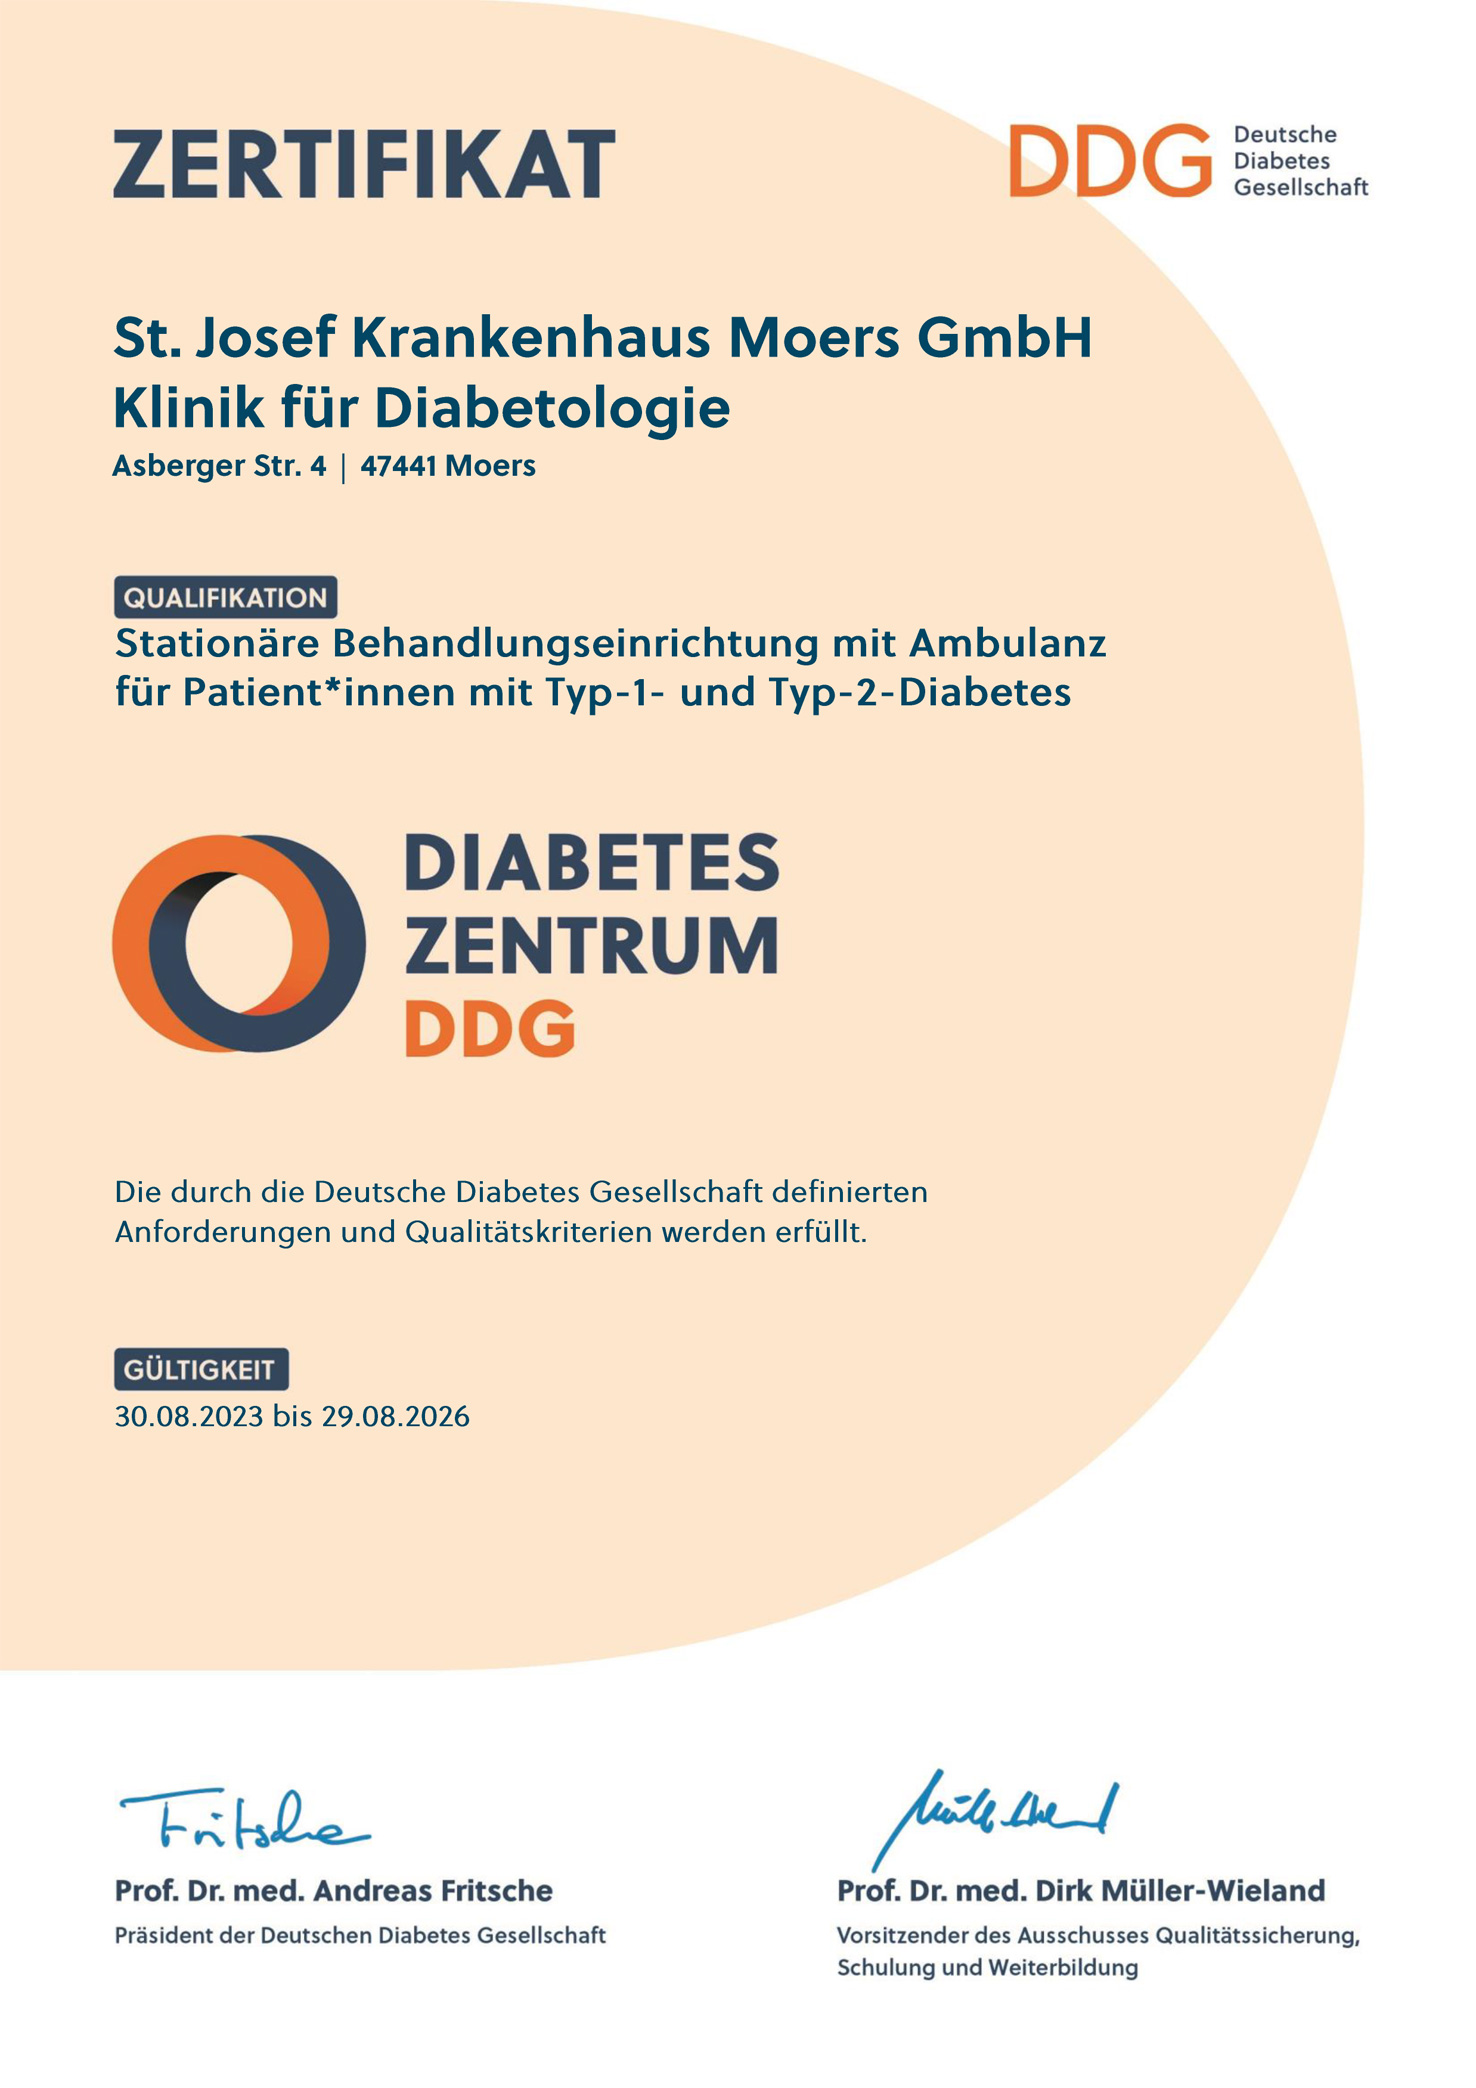 Urkunde DDG Deutsche Diabetes Gesellschaft für das St. Josef Krankenhaus Department Diabetologie